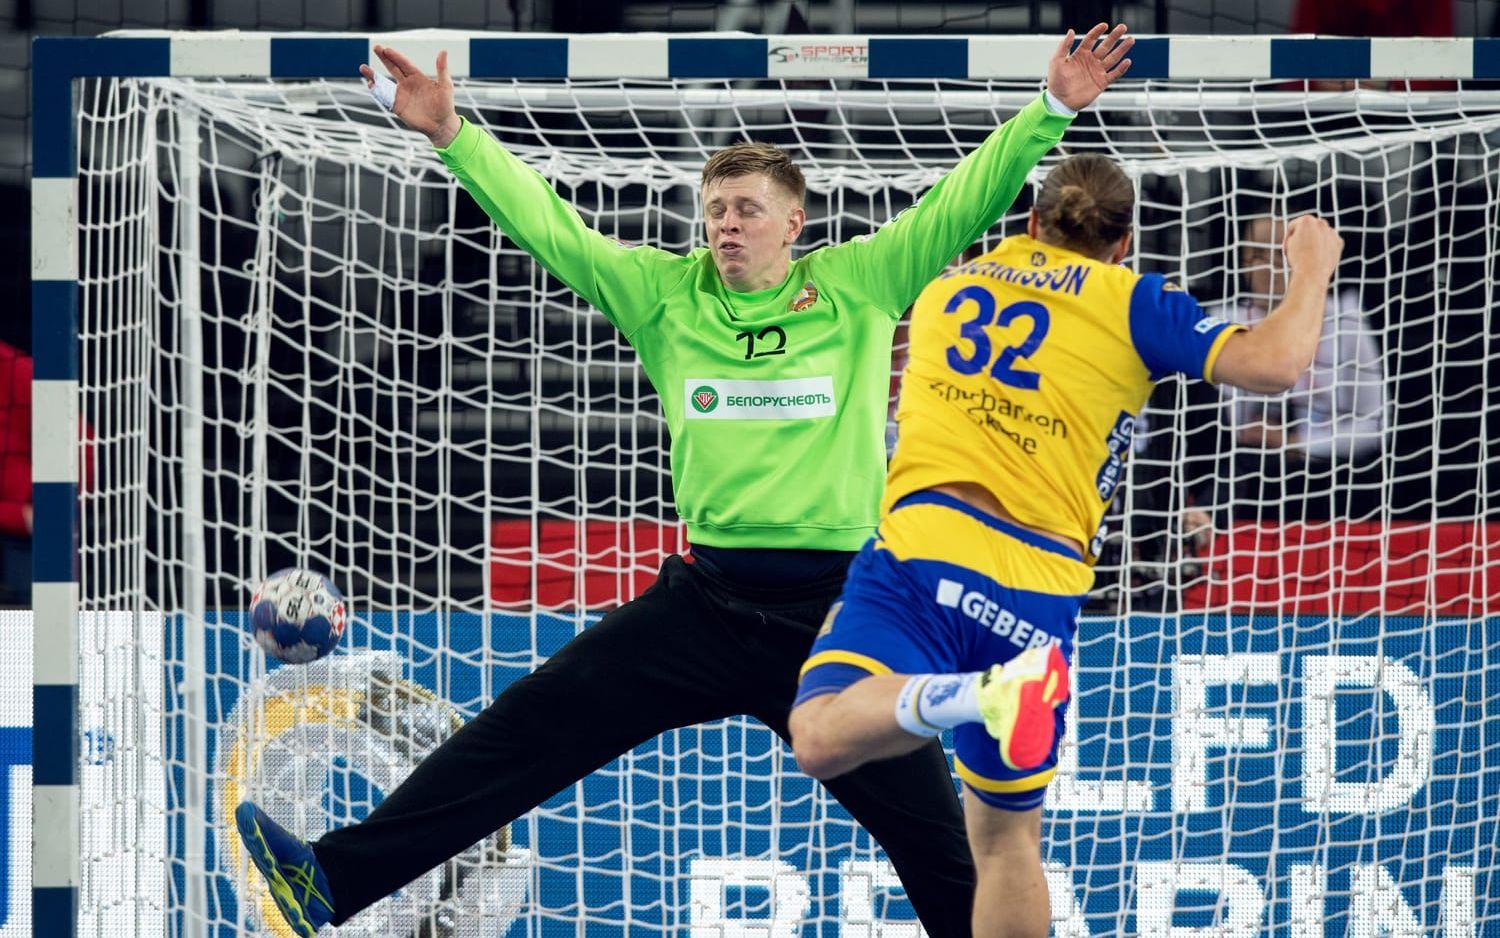 Sveriges hopp om en EM-semifinal lever i allra högsta grad efter att Blågult krossat Vitryssland. 